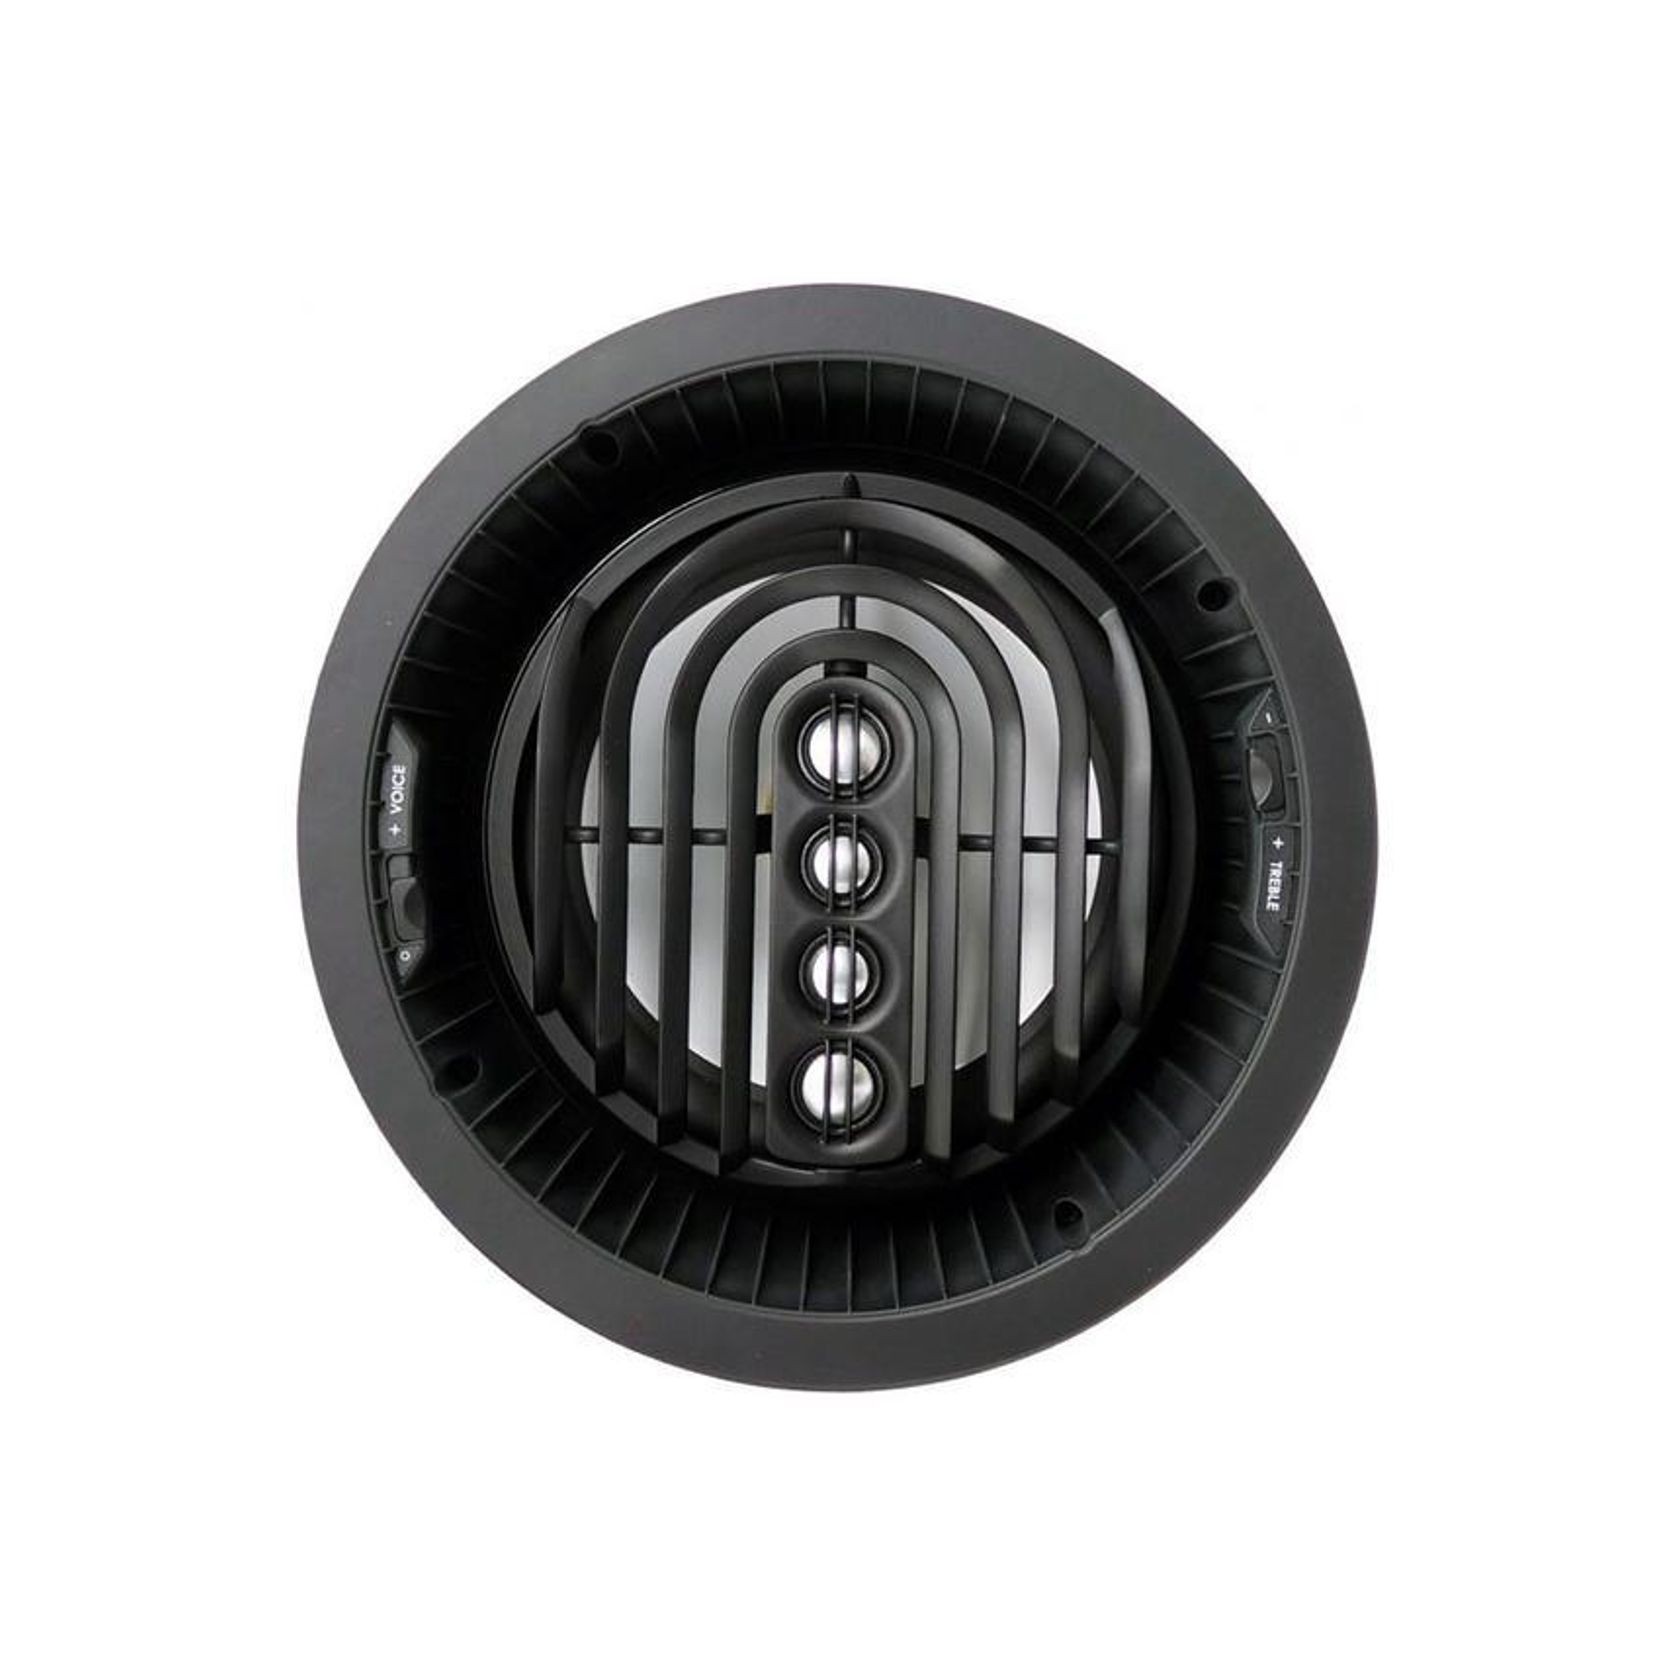 Speakercraft Aim Series 283 In-Ceiling Speakers gallery detail image